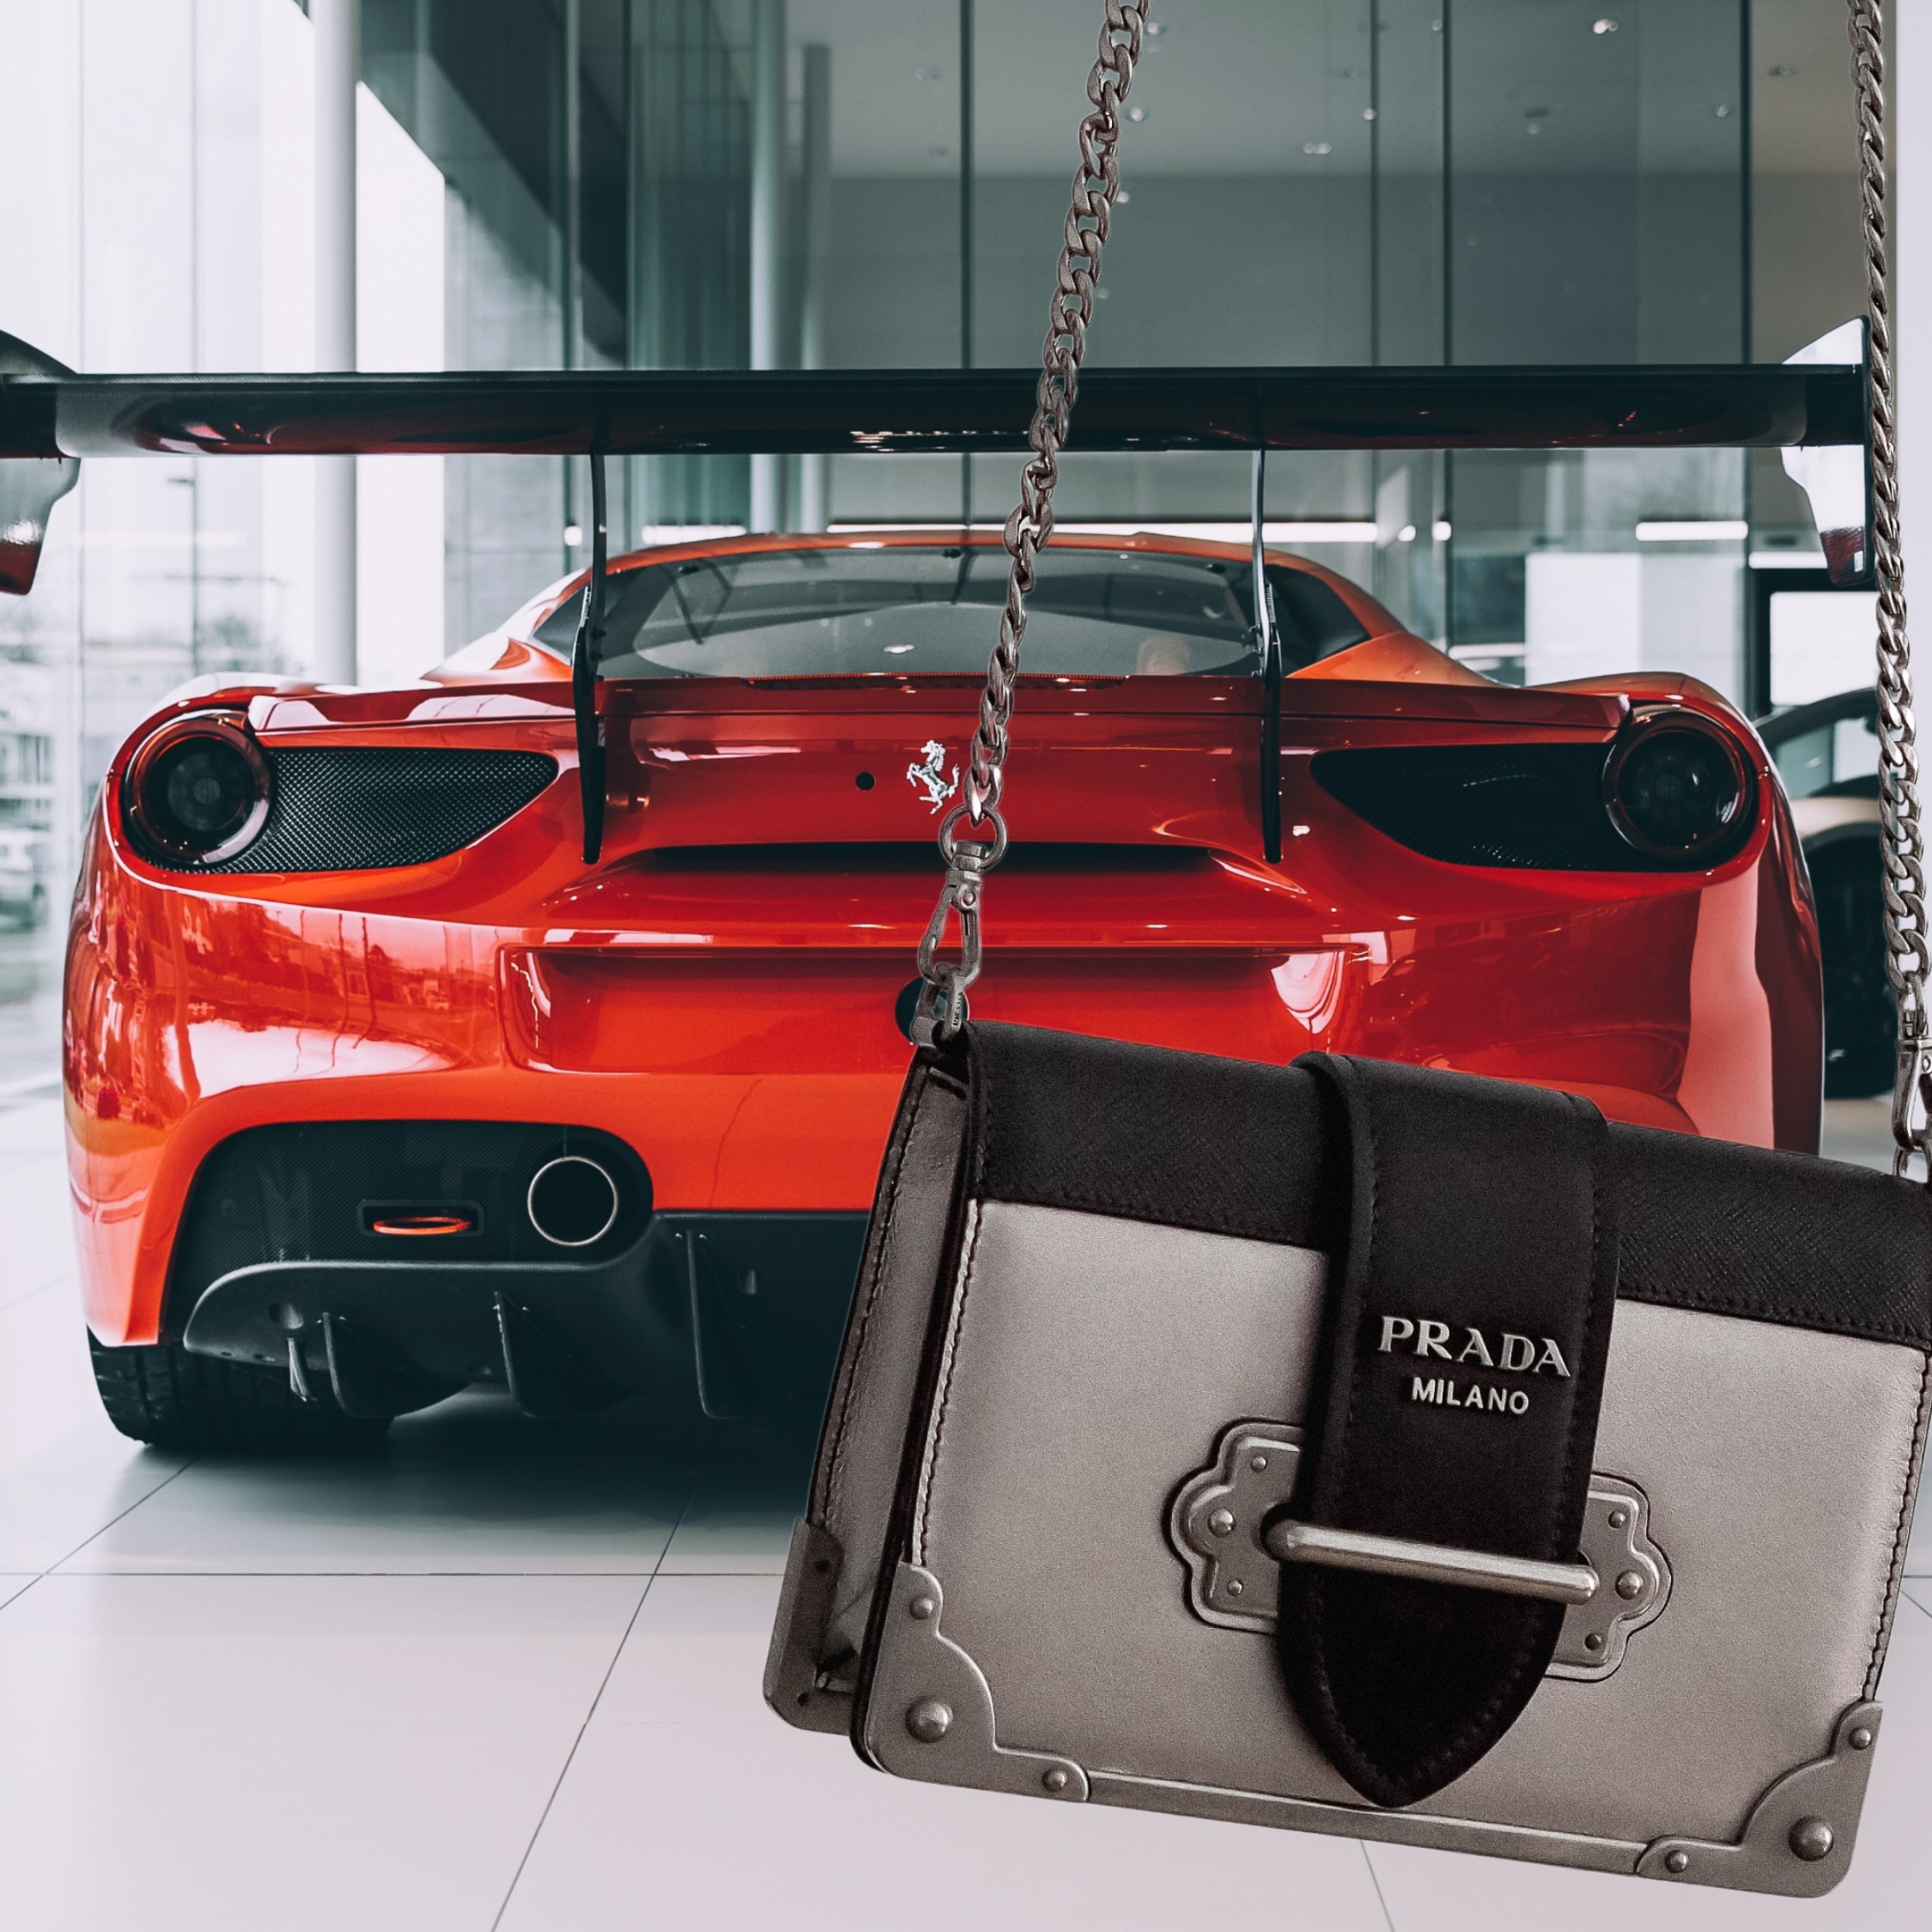 A Ferrari and a Prada bag